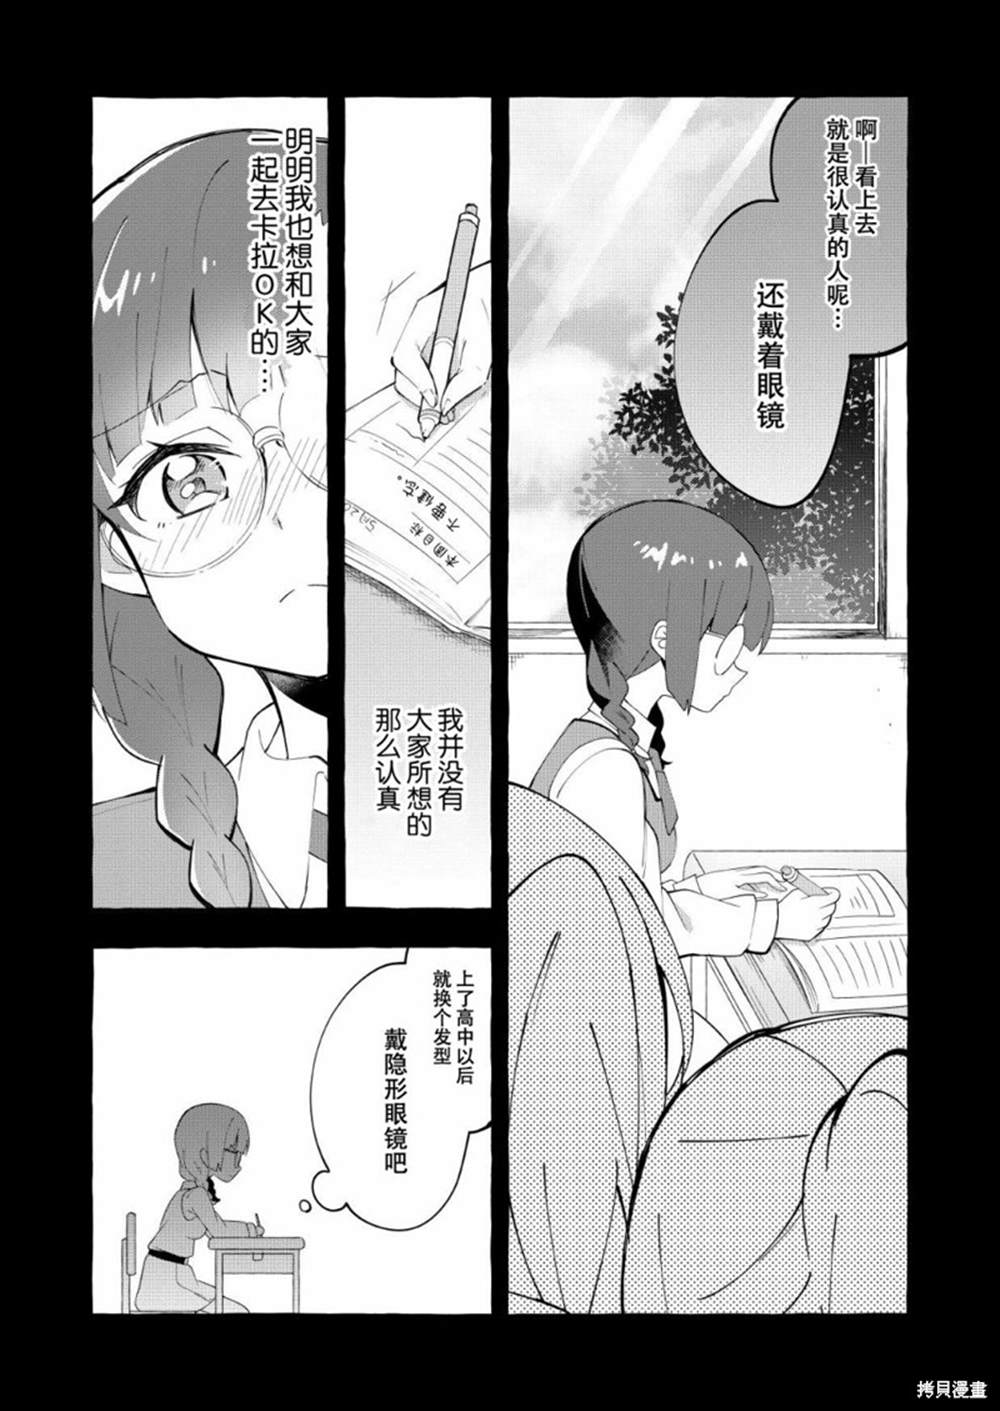 安蔵くんこ揭载短篇集 - 第1话 眼镜妖精和讨厌眼镜的我 - 2